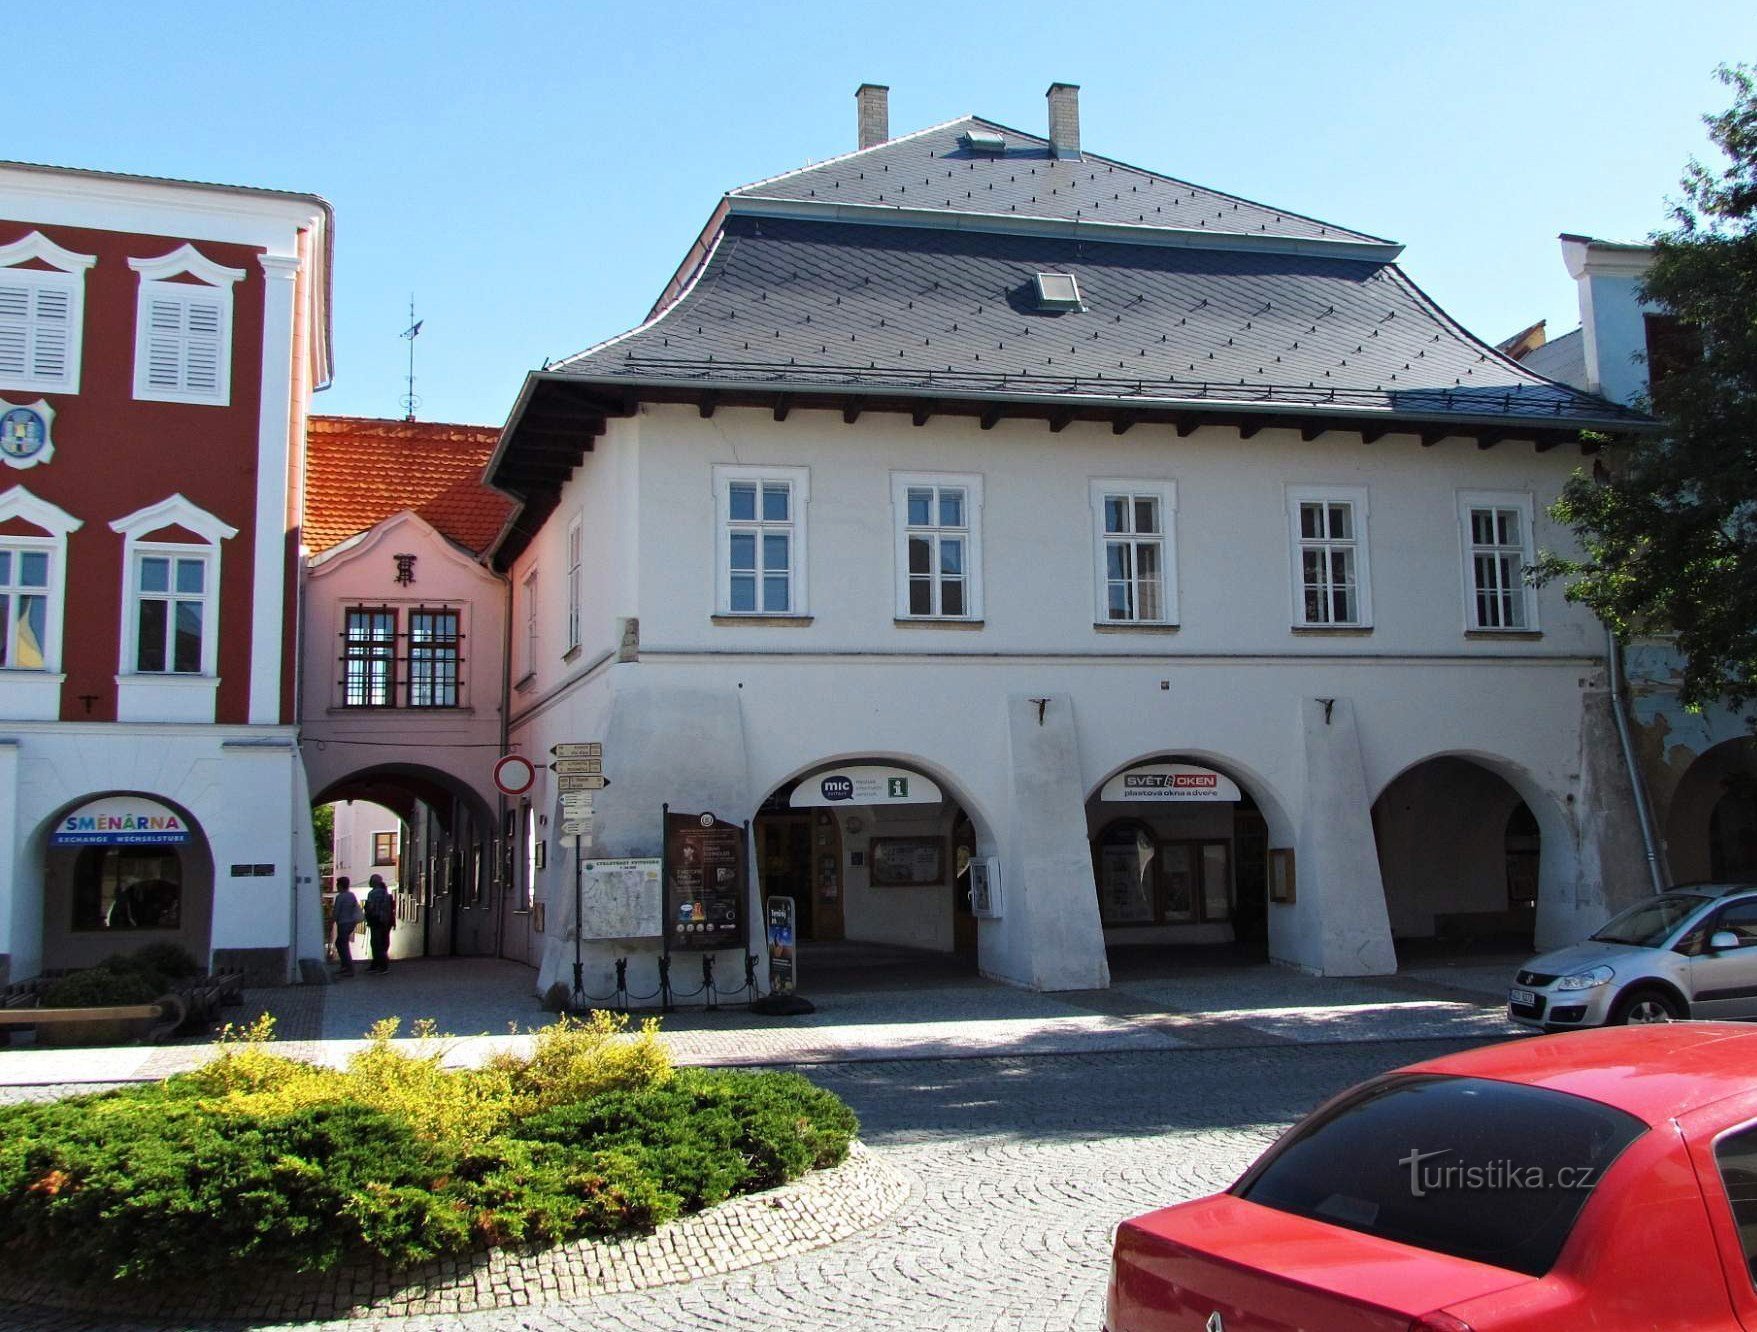 Det gamle rådhus og U Mouřenina-huset på pladsen i Svitavy